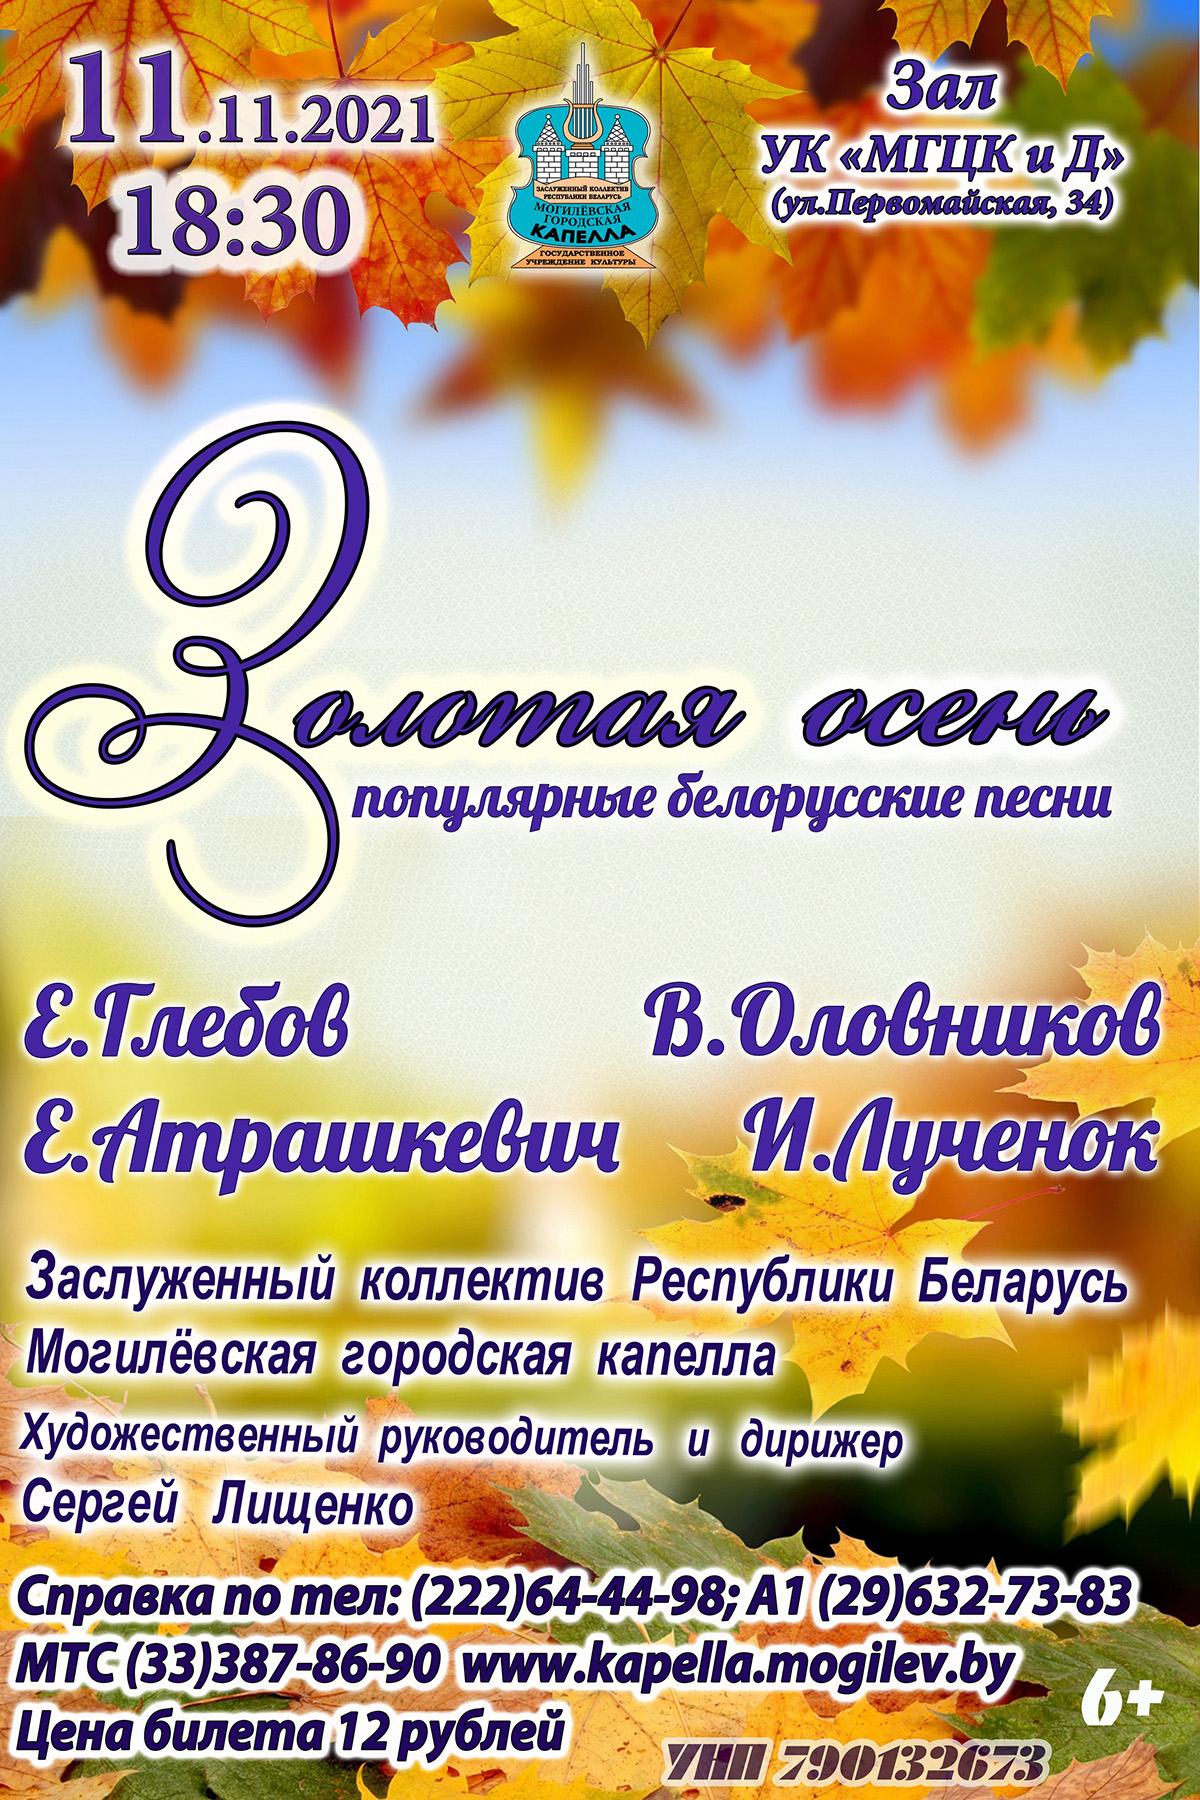 Могилевская городская капелла представит программу «Золотая осень» 11 ноября